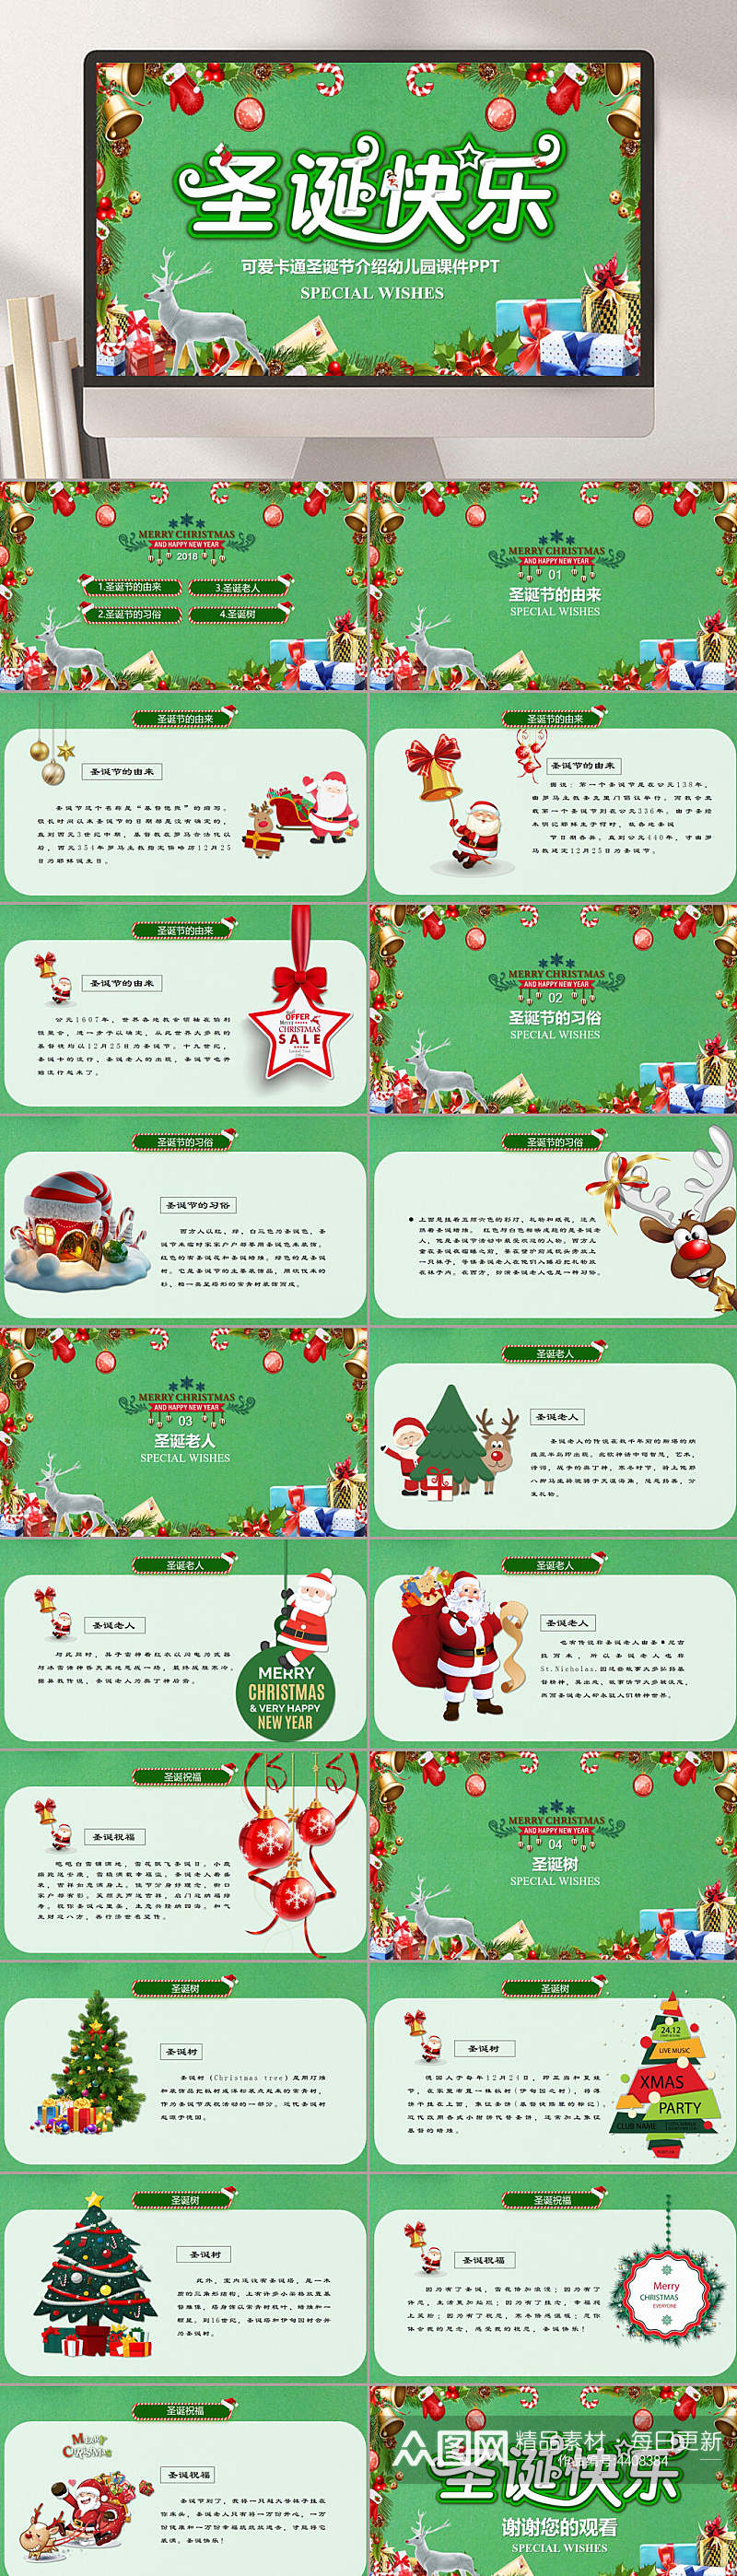 绿色卡通可爱铃铛礼盒圣诞节介绍PPT素材